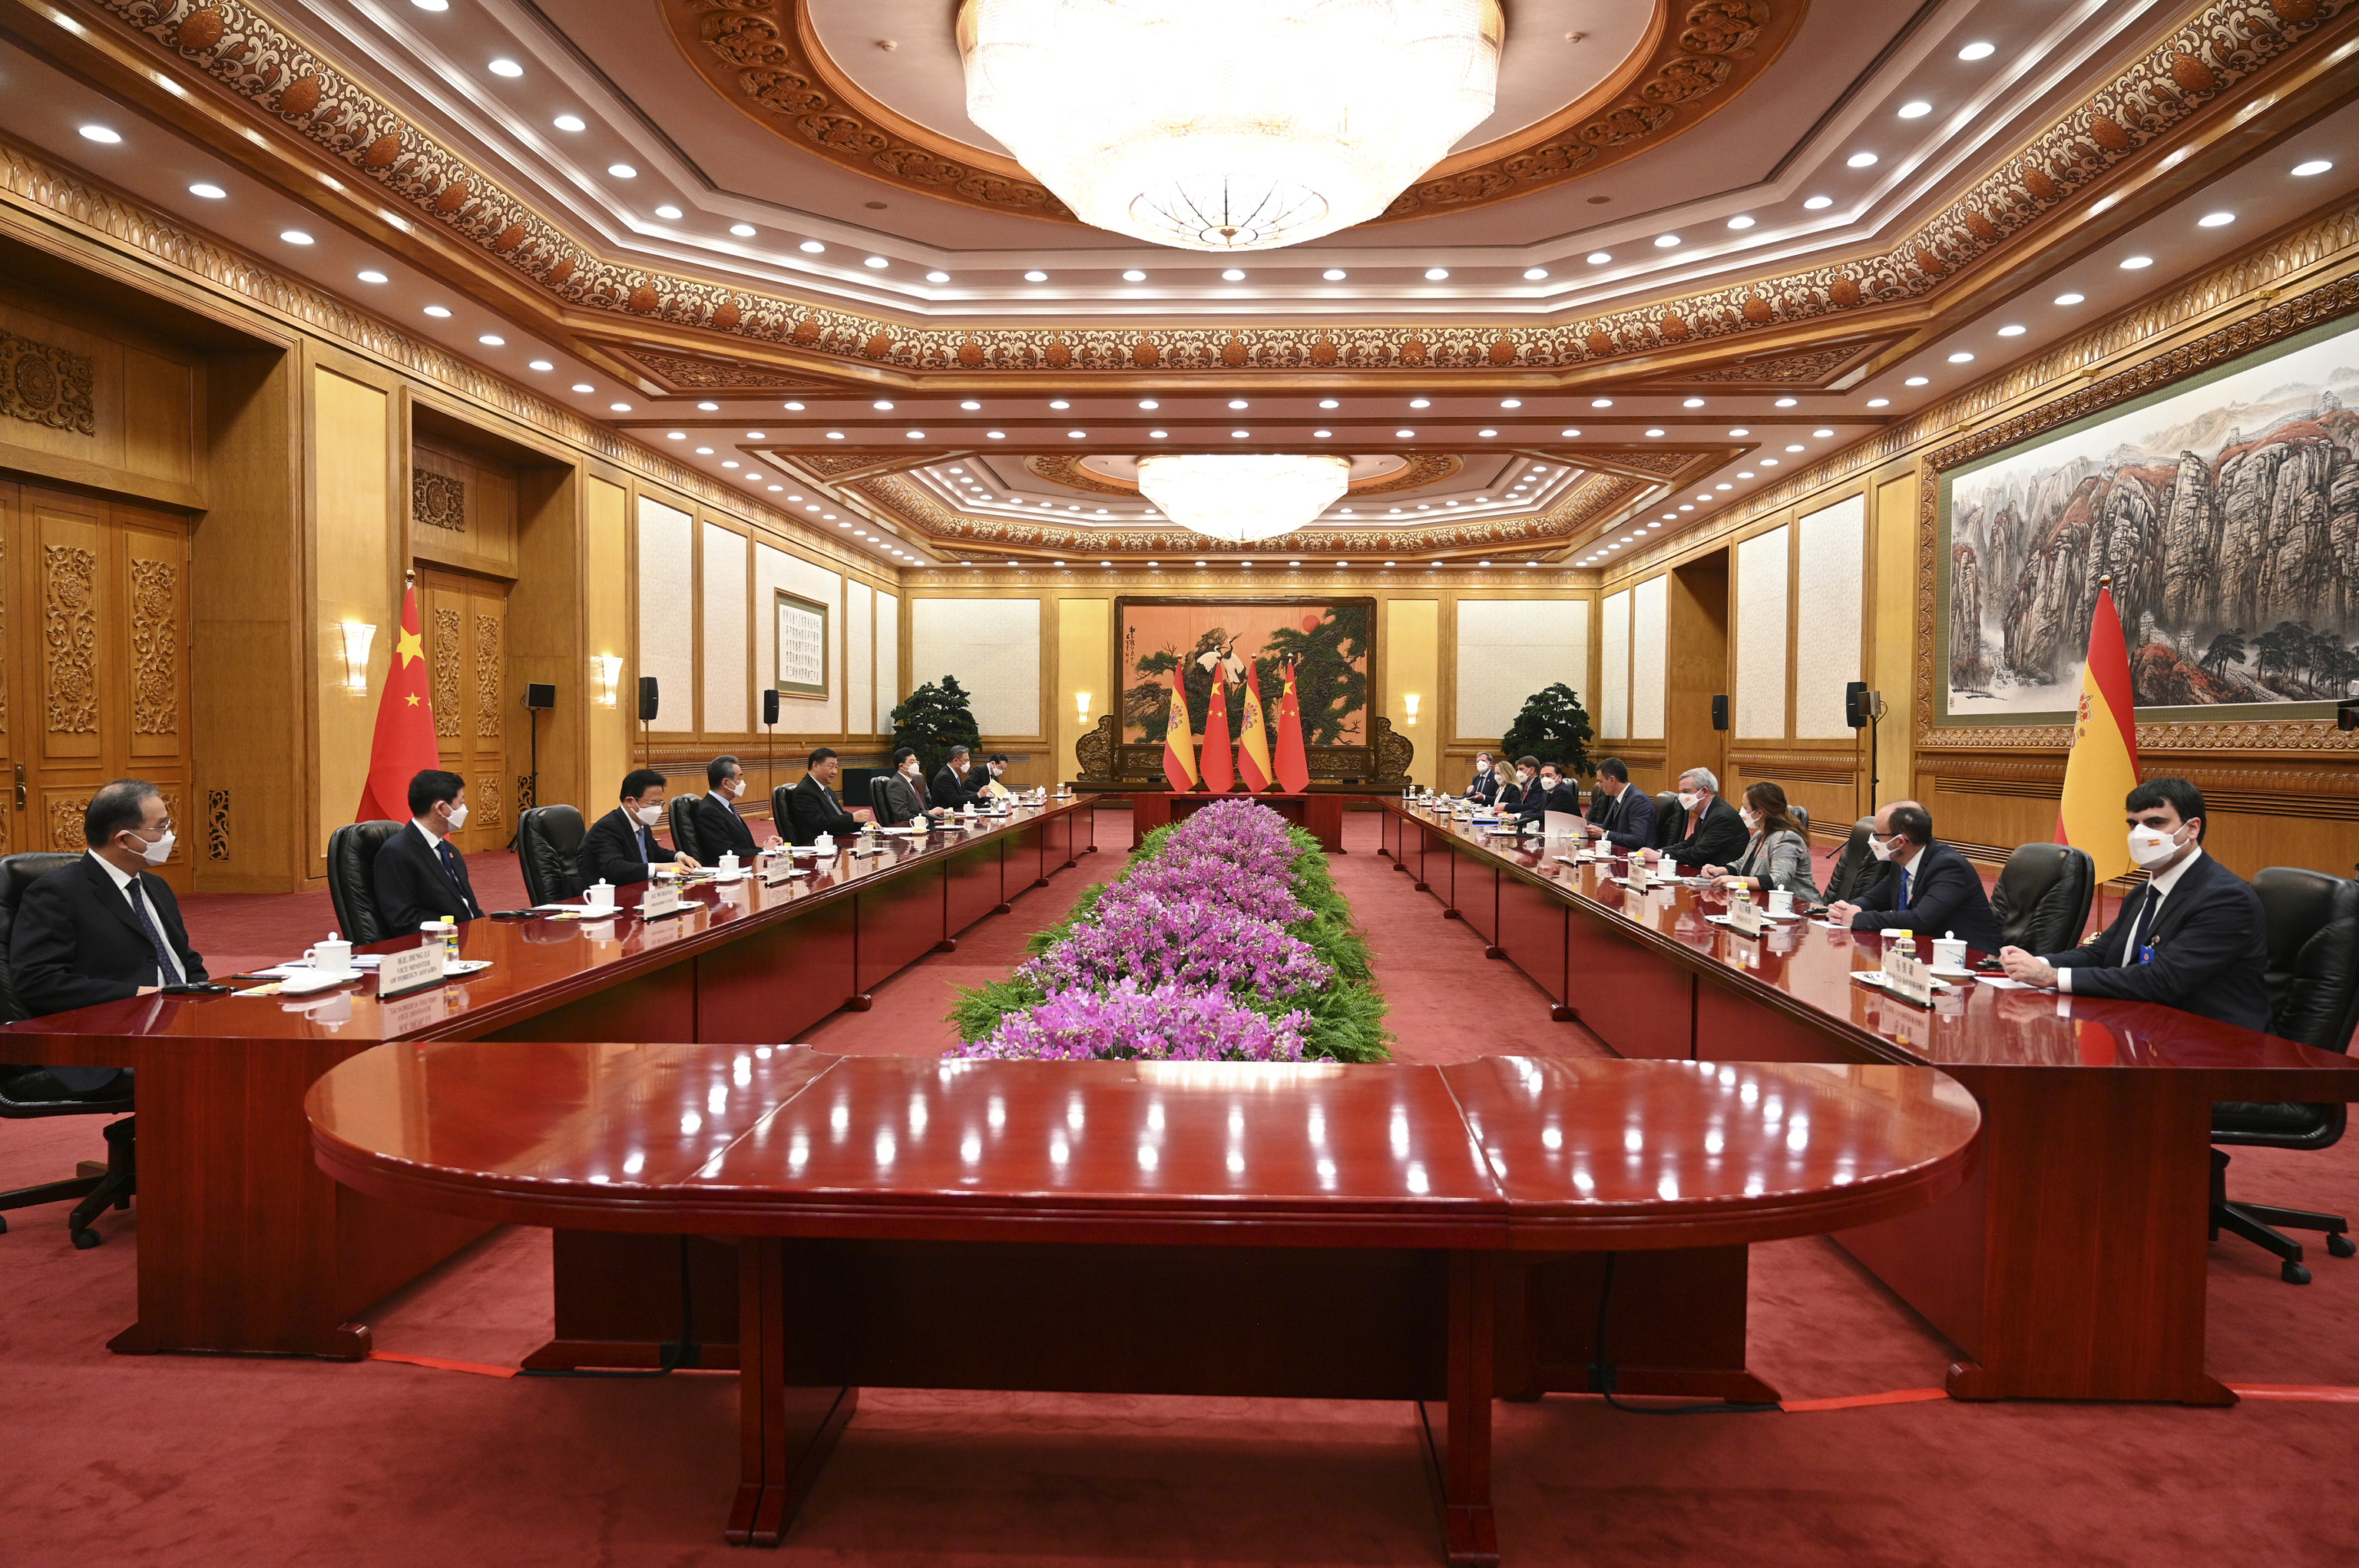 La reunión de Sánchez y Xi con sus respectivas delegaciones en el Gran Palacio del Pueblo.